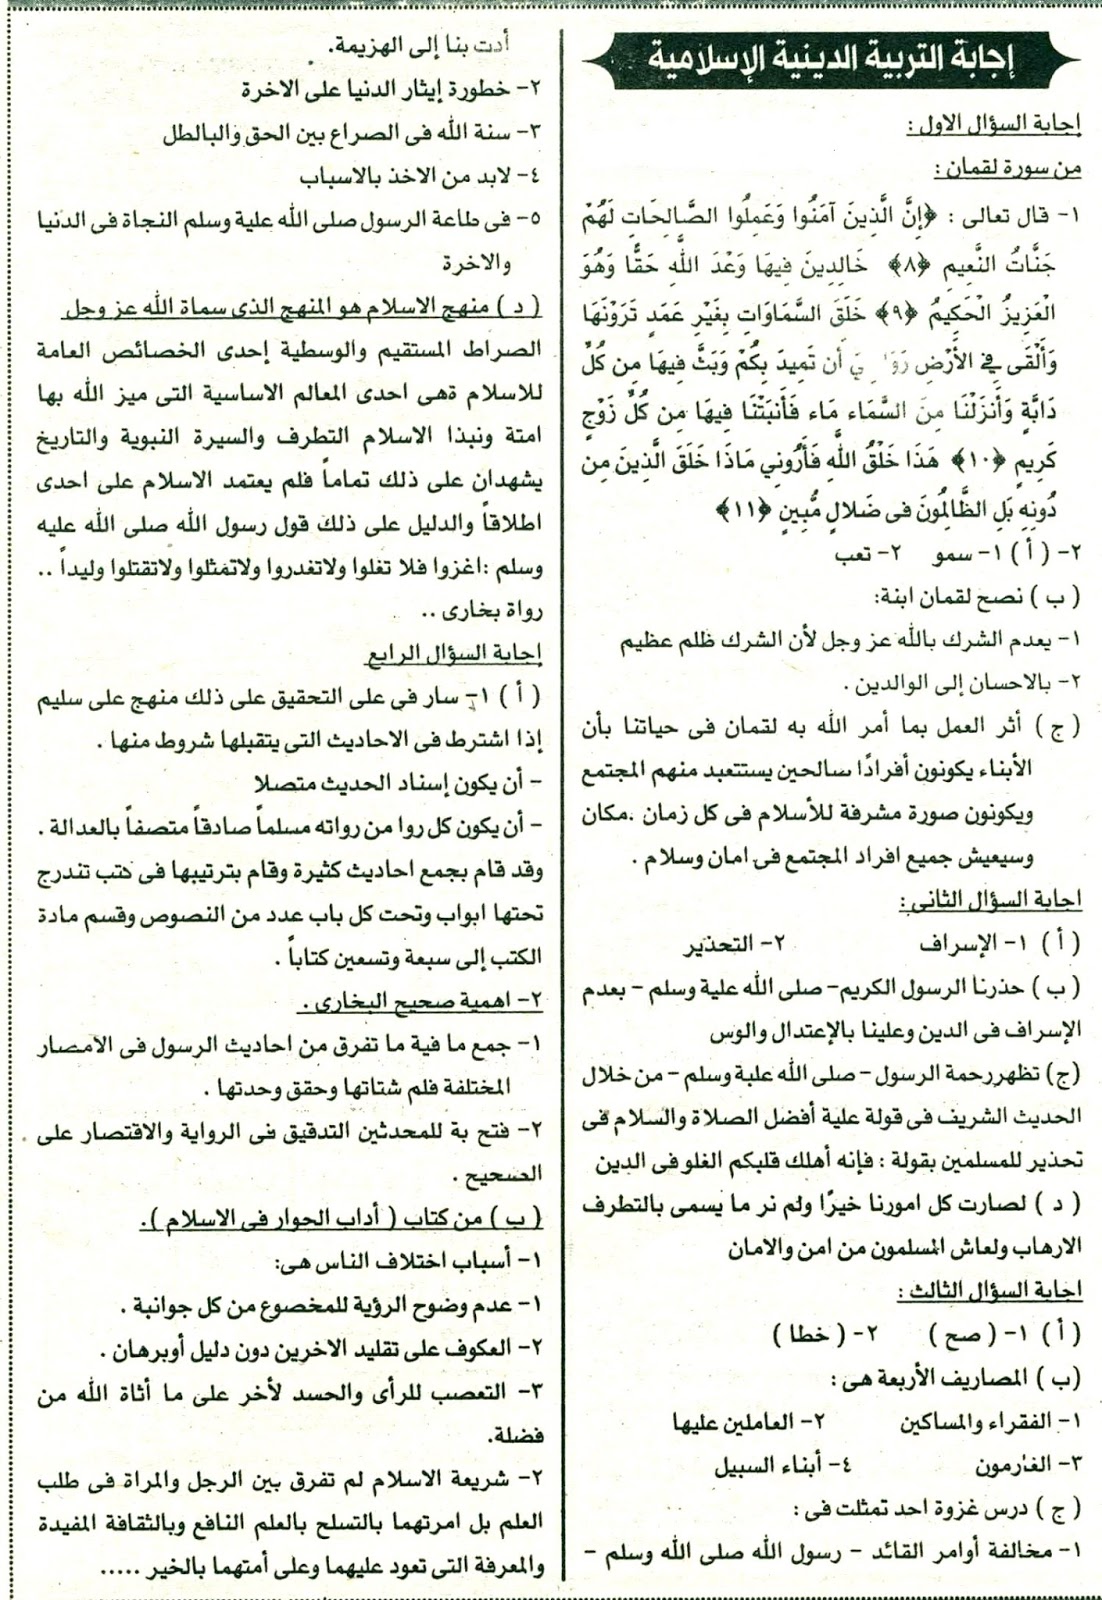 امتحان التربية الاسلامية 2016 للثانوية العامة المصرية بالسودان 12